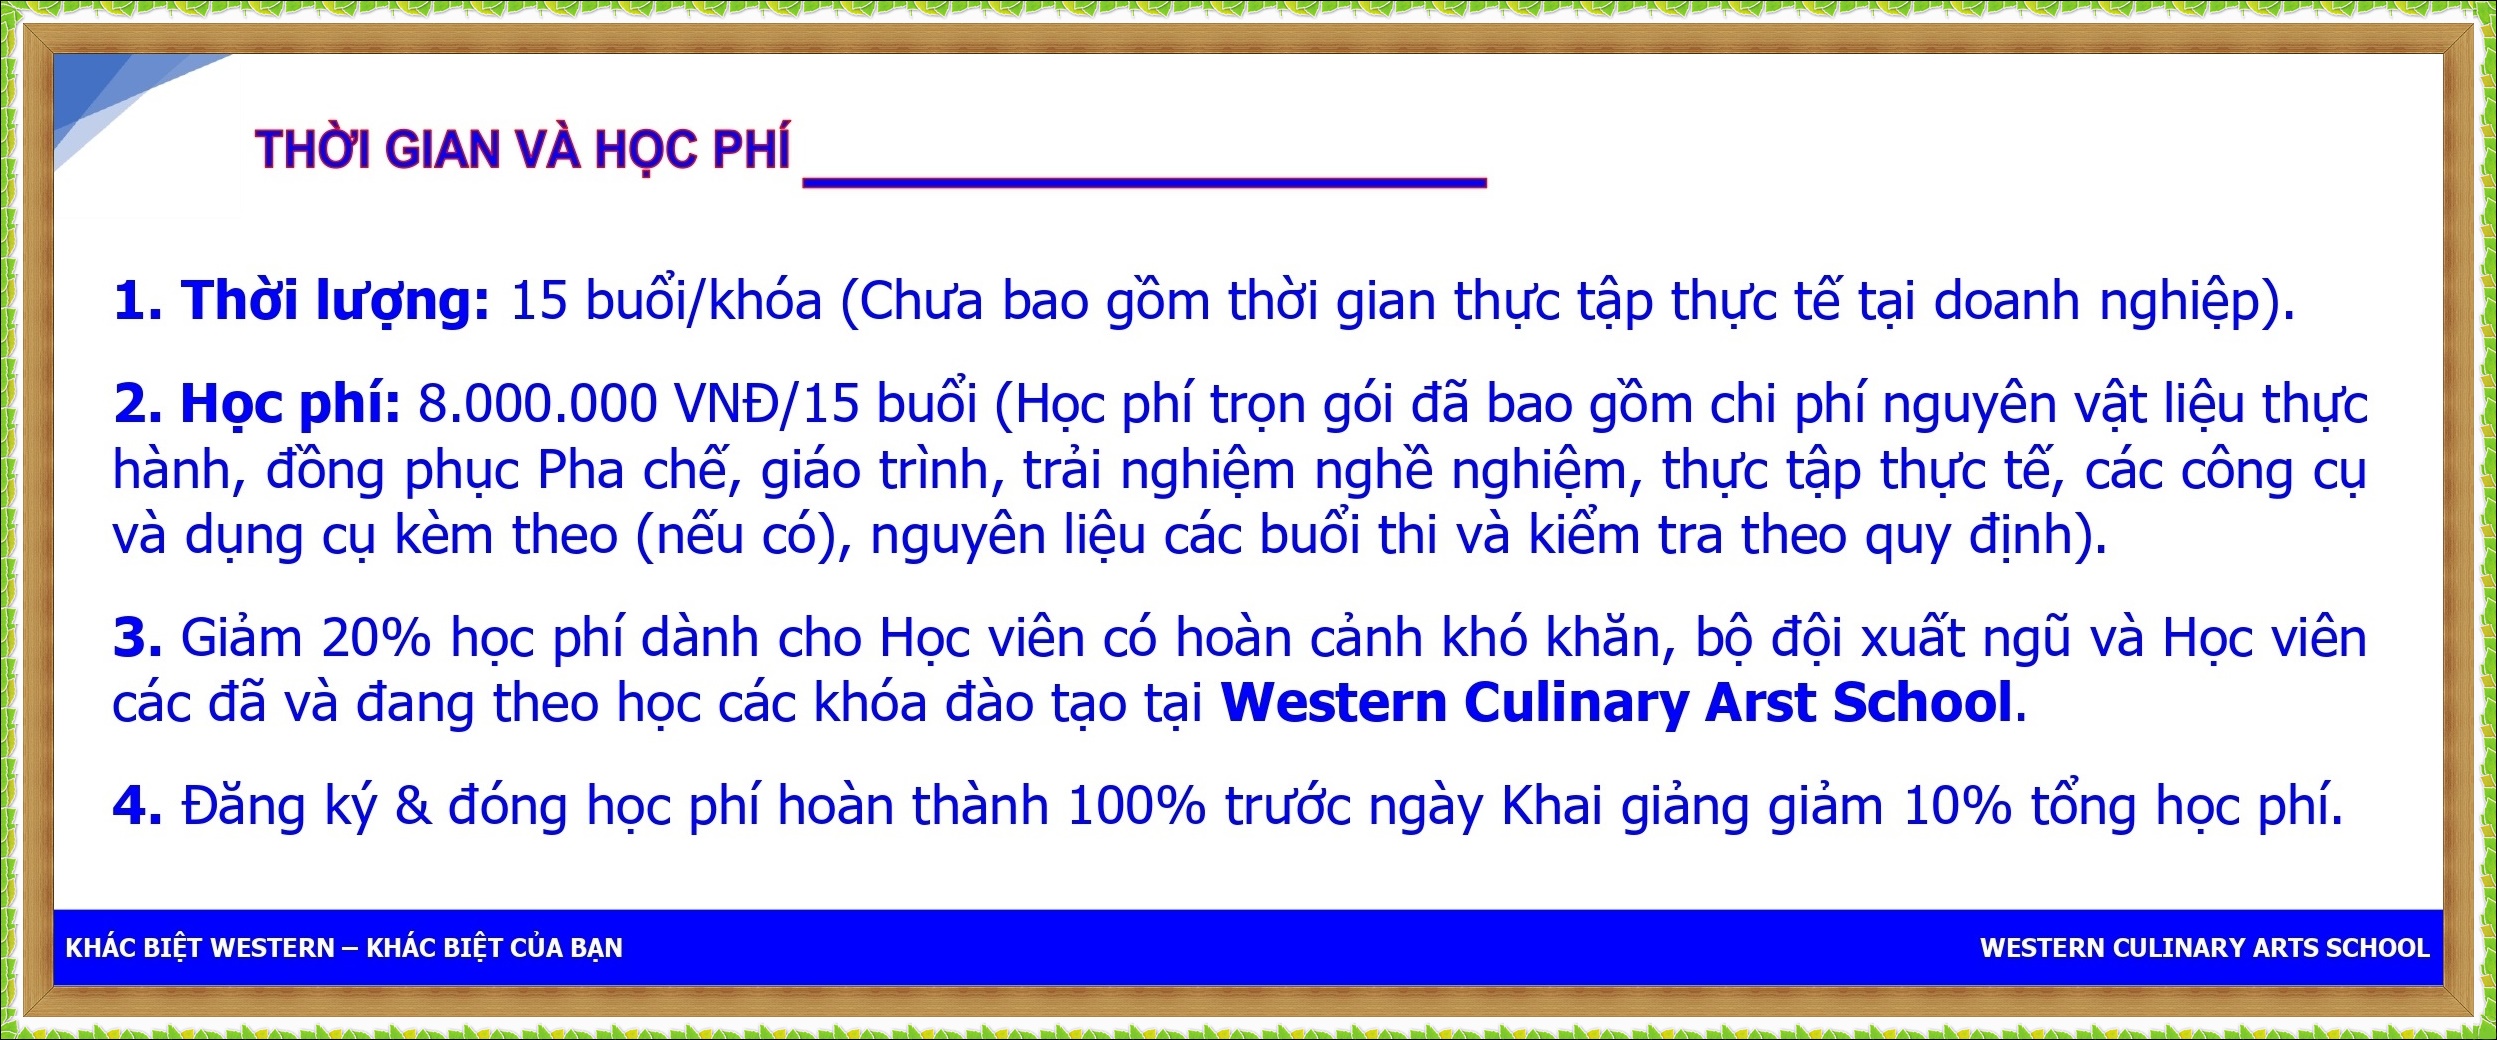 THOI GIAN VA HOC PHI NVBARTDH_page-0001